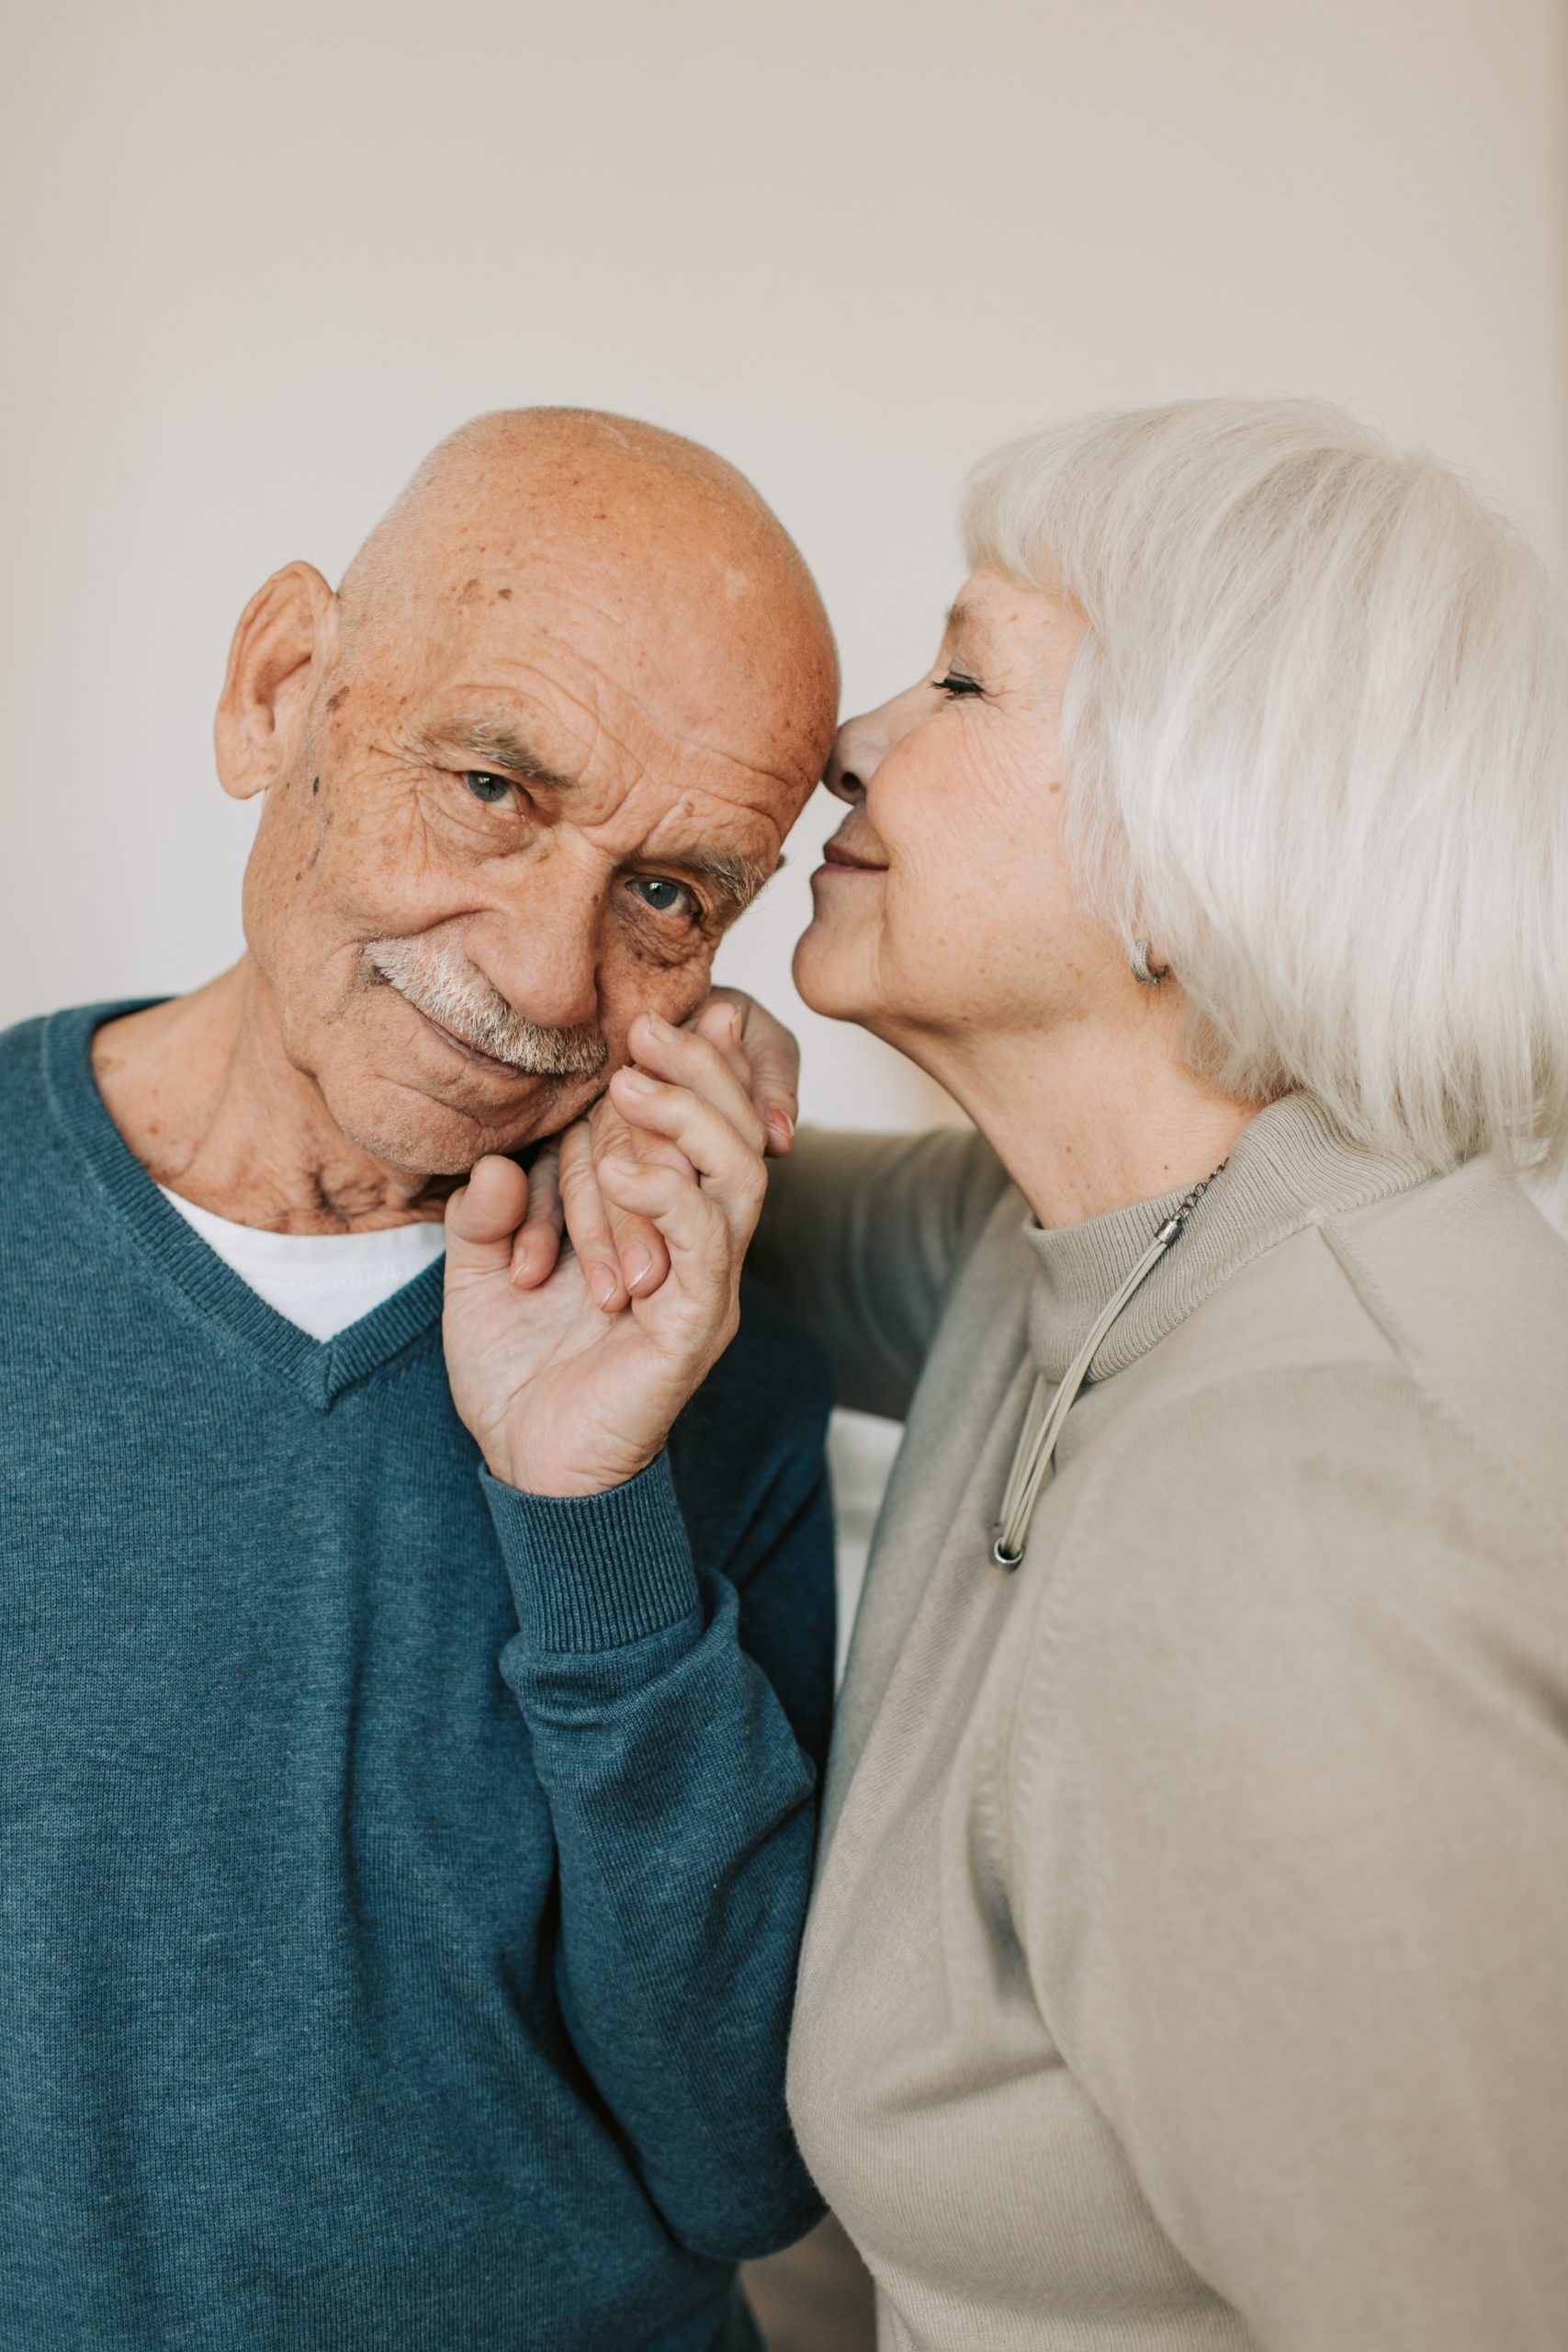 Ein liebevolles älteres Paar, wobei die Frau ihren Partner auf die Wange küsst, ein Bild, das die Wichtigkeit von emotionaler und finanzieller Vorsorge für ein sorgenfreies und glückliches Zusammenleben im Alter symbolisiert.